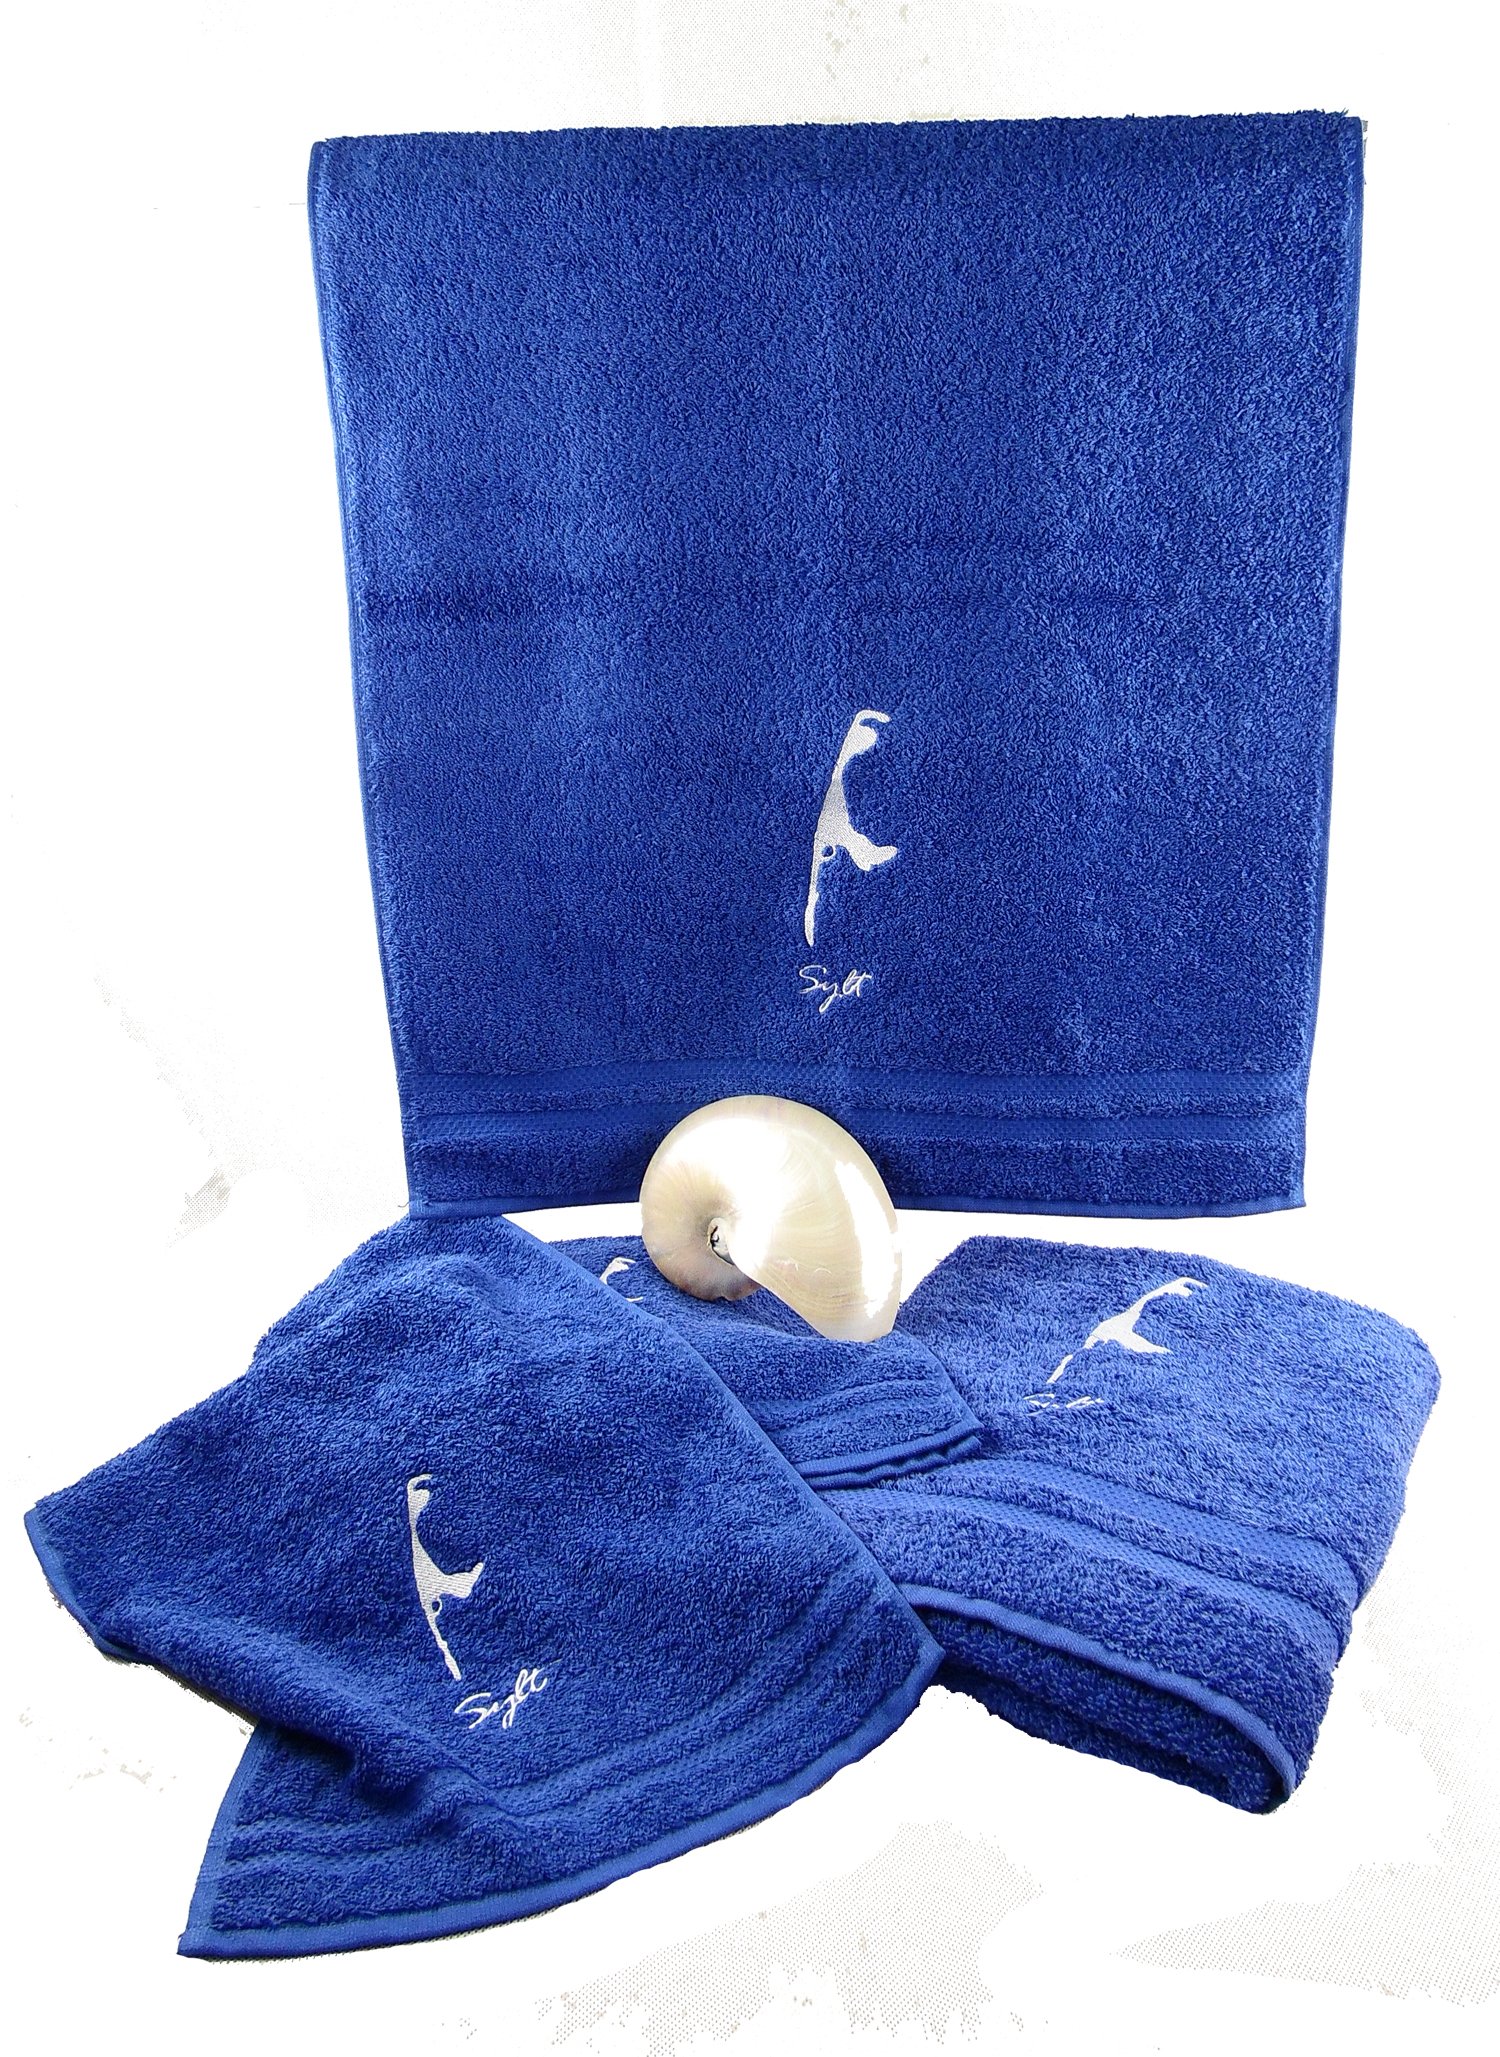 osters muschel-sammler-shop Hochwertige - Flauschige und saugfähige Baumwoll-Handtücher in royal-blau mit weißer Sylt Stickerei - Exclusiv (Handtuch 50x100)